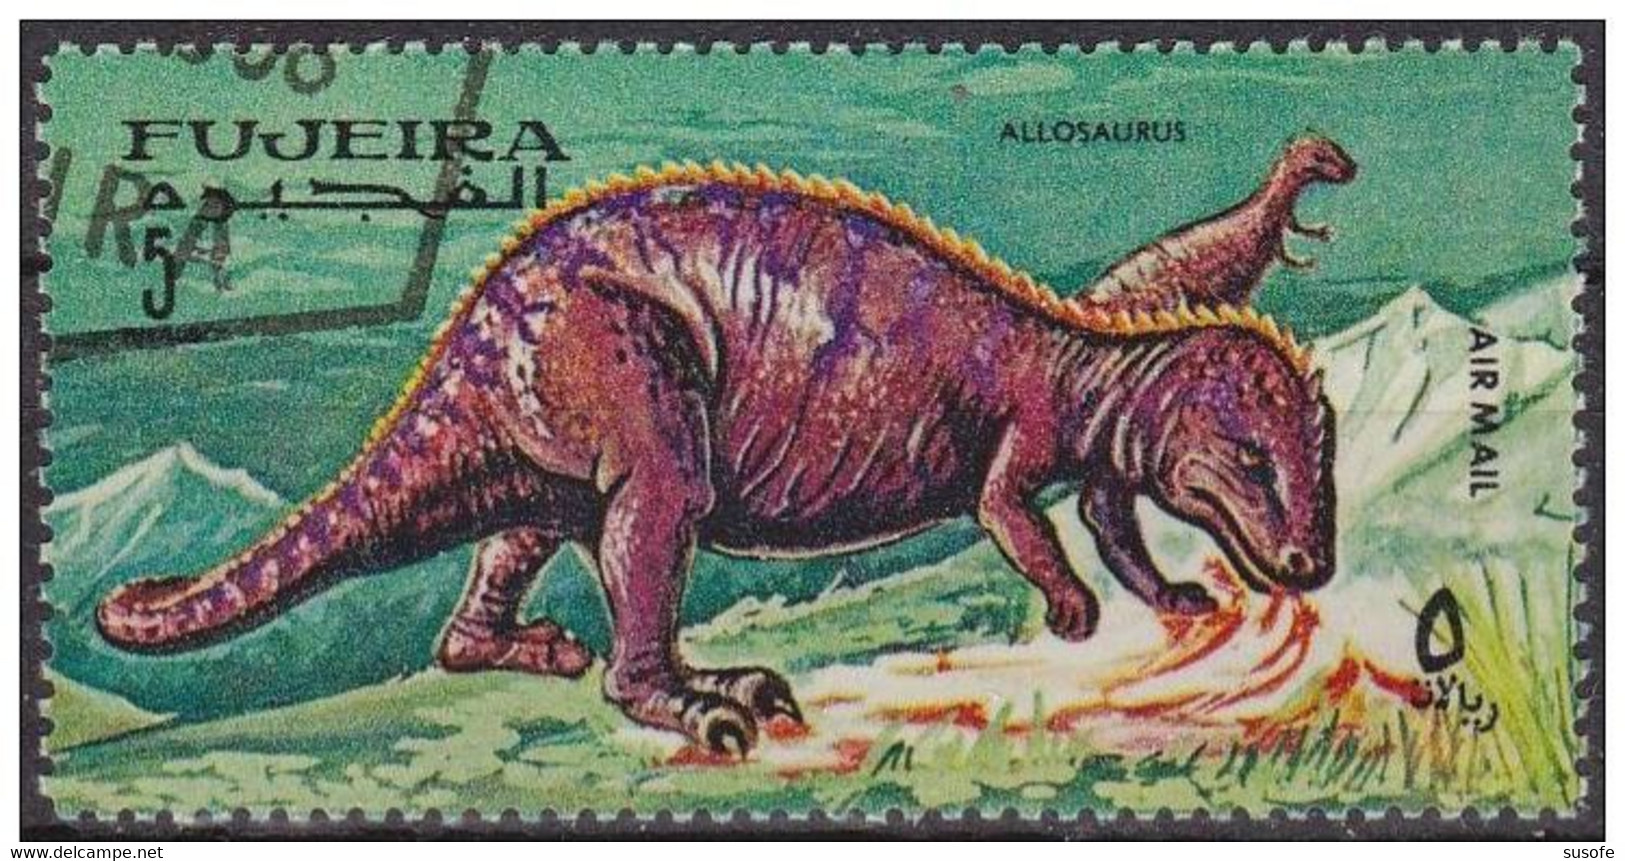 Fujeira 1968 Michel 256A Sello * Animales Prehistoricos Allosaurus Correo Aereo Yvert 78-E Fuyaira Fujairah Stamps - Fujeira